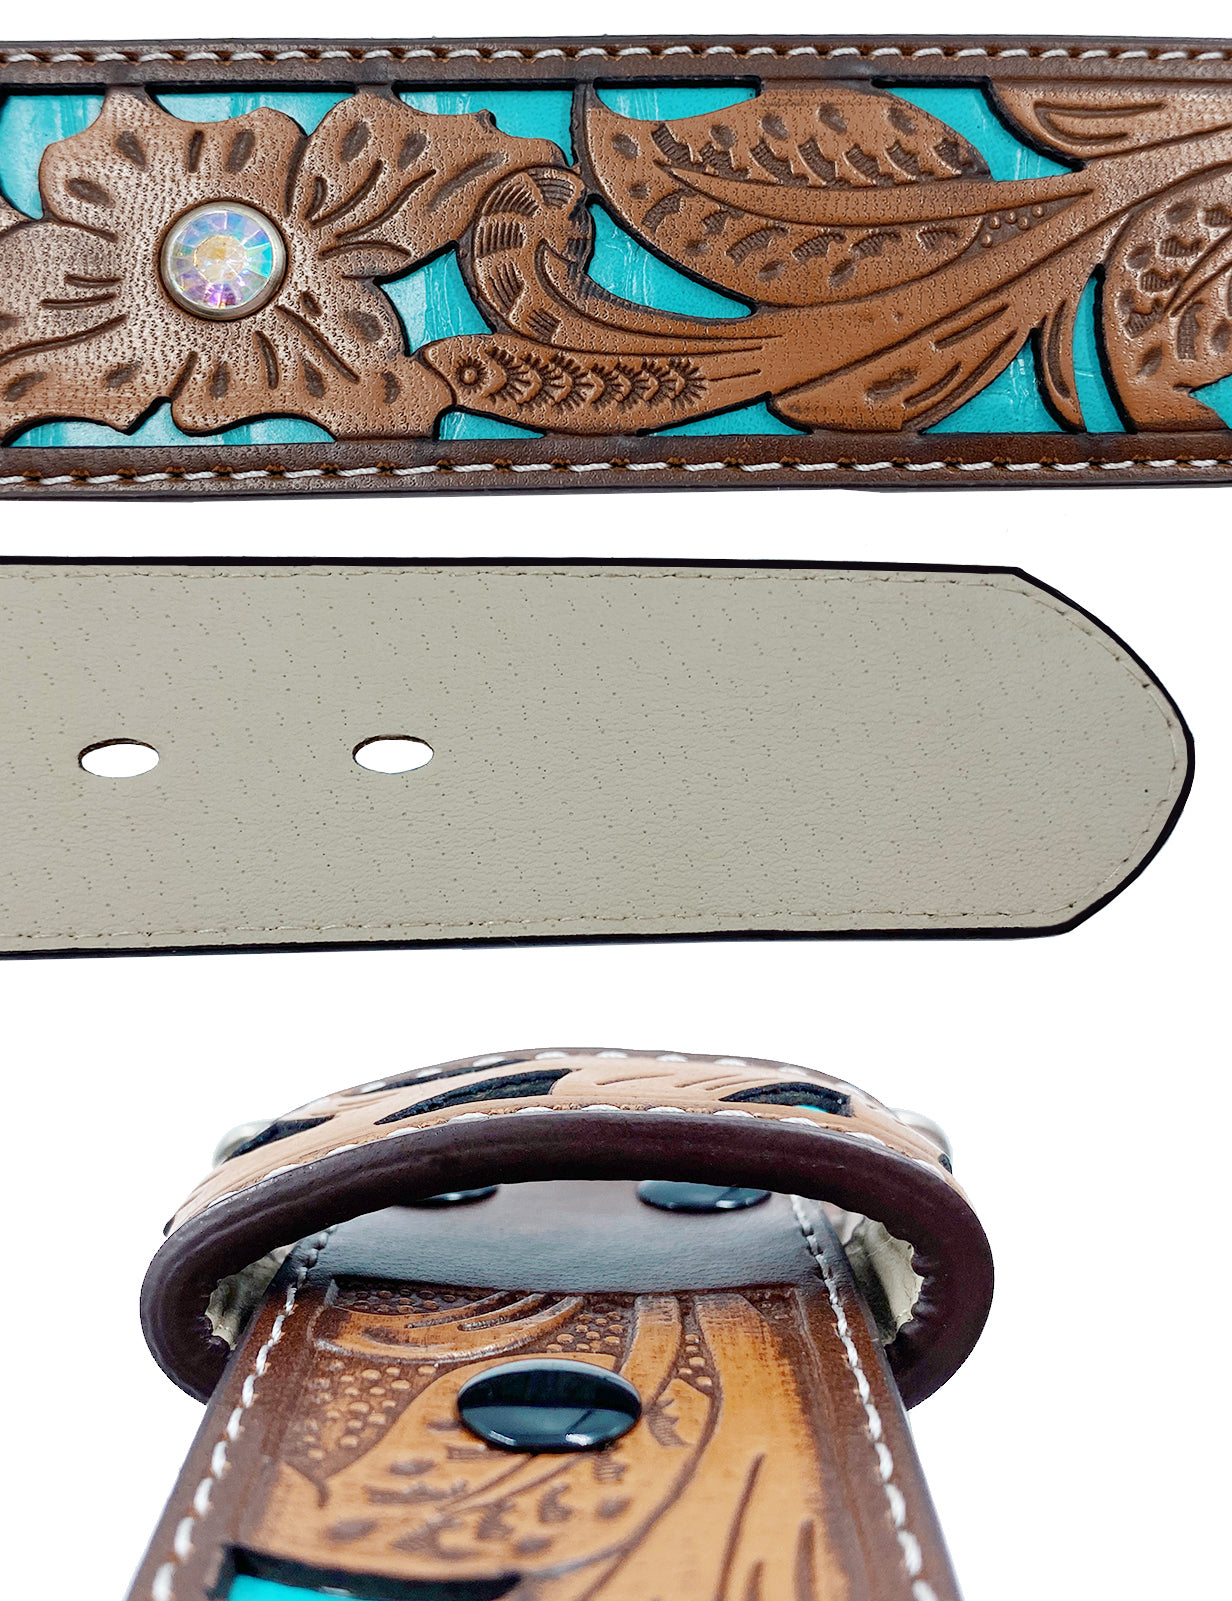 Cinturones TOPACC Western Turquoise - Hebilla de cinturón de tres cruces Cobre/Bronce